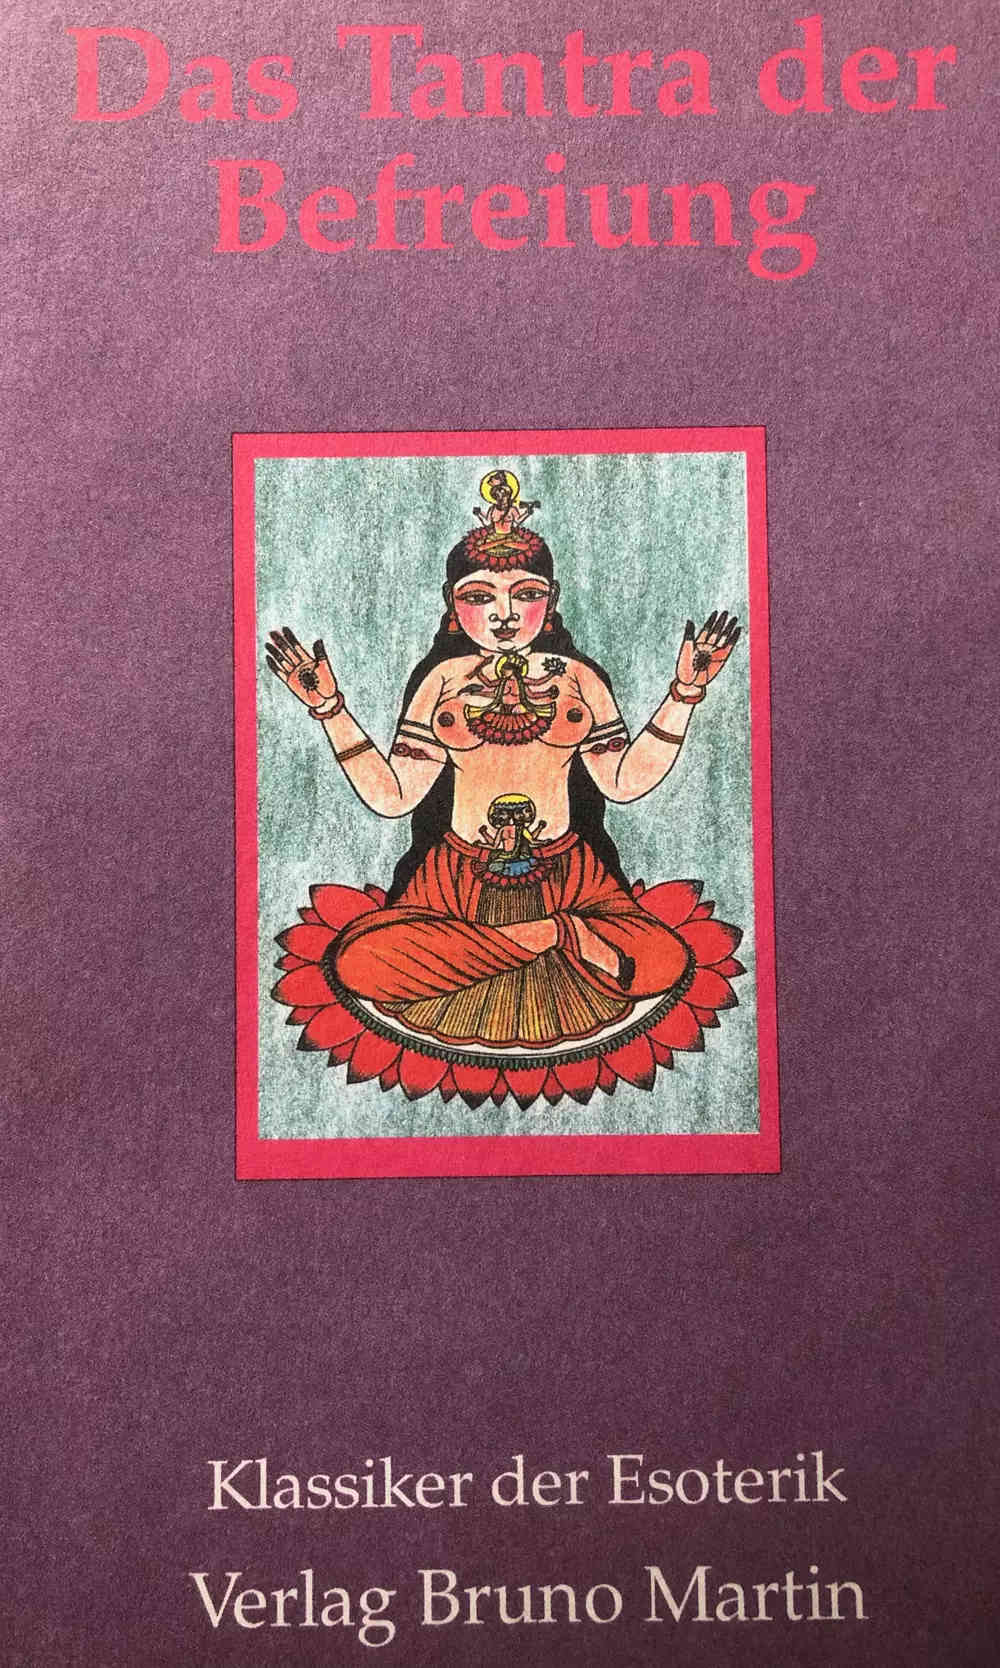 Die Bhairava-Verse wurden von Regina Heckert abgeschrieben und sind im BeFree Shop erhältlich